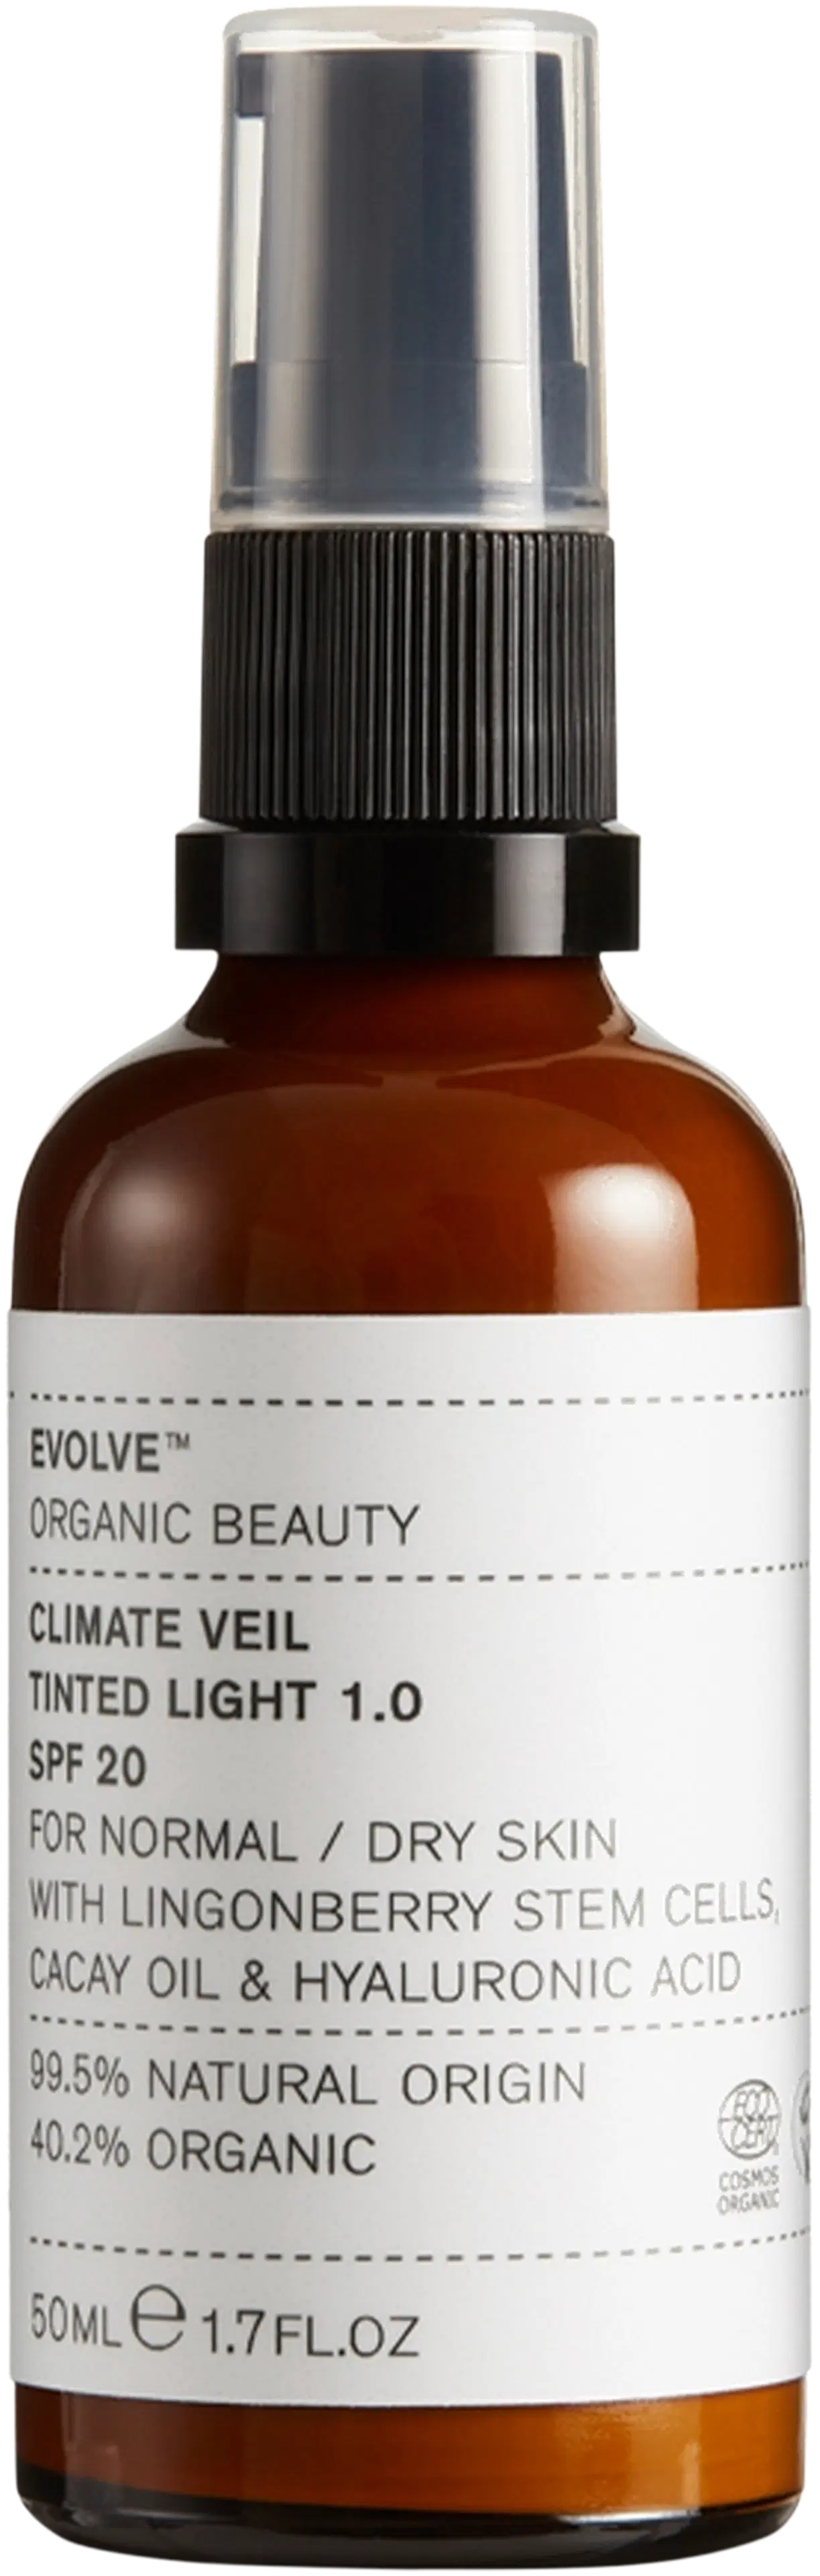 Evolve Organic Beauty Climate Veil Tinted Spf20 Light Sävyttävä Kasvovoide 50 ml